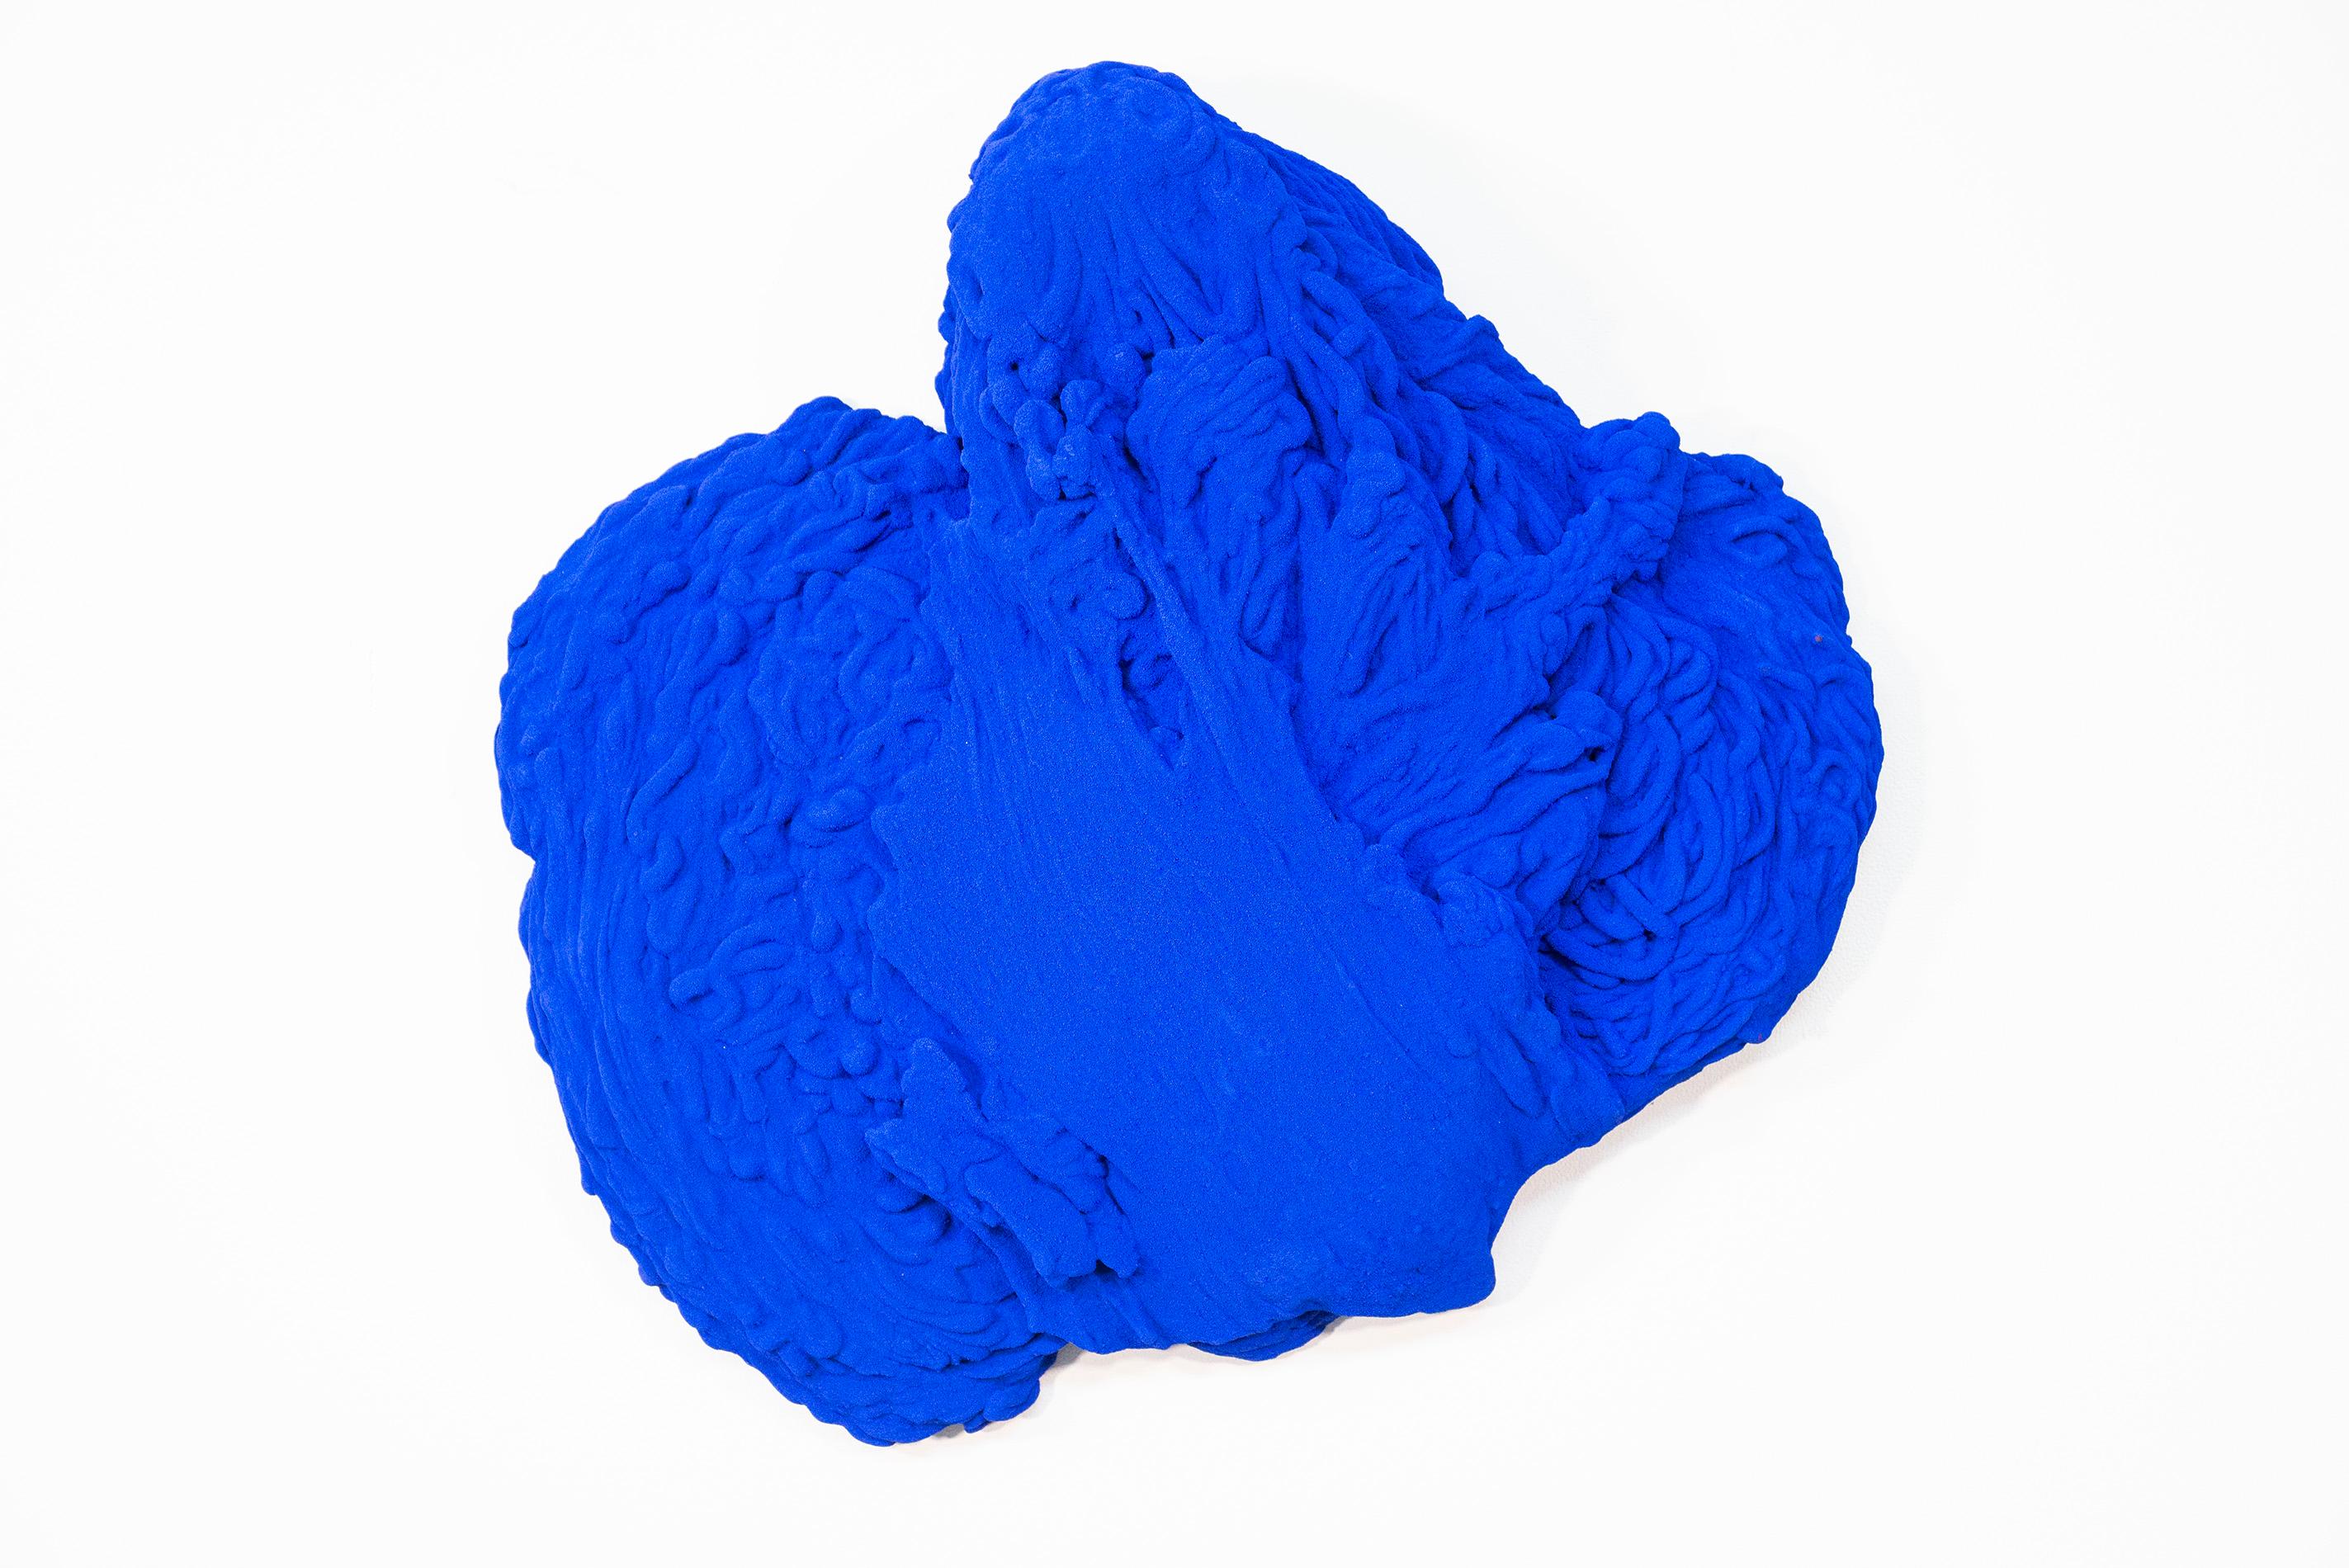 Blue Matter 2 - sculpture murale mate, bleue, texturée, abstraite et technique mixte